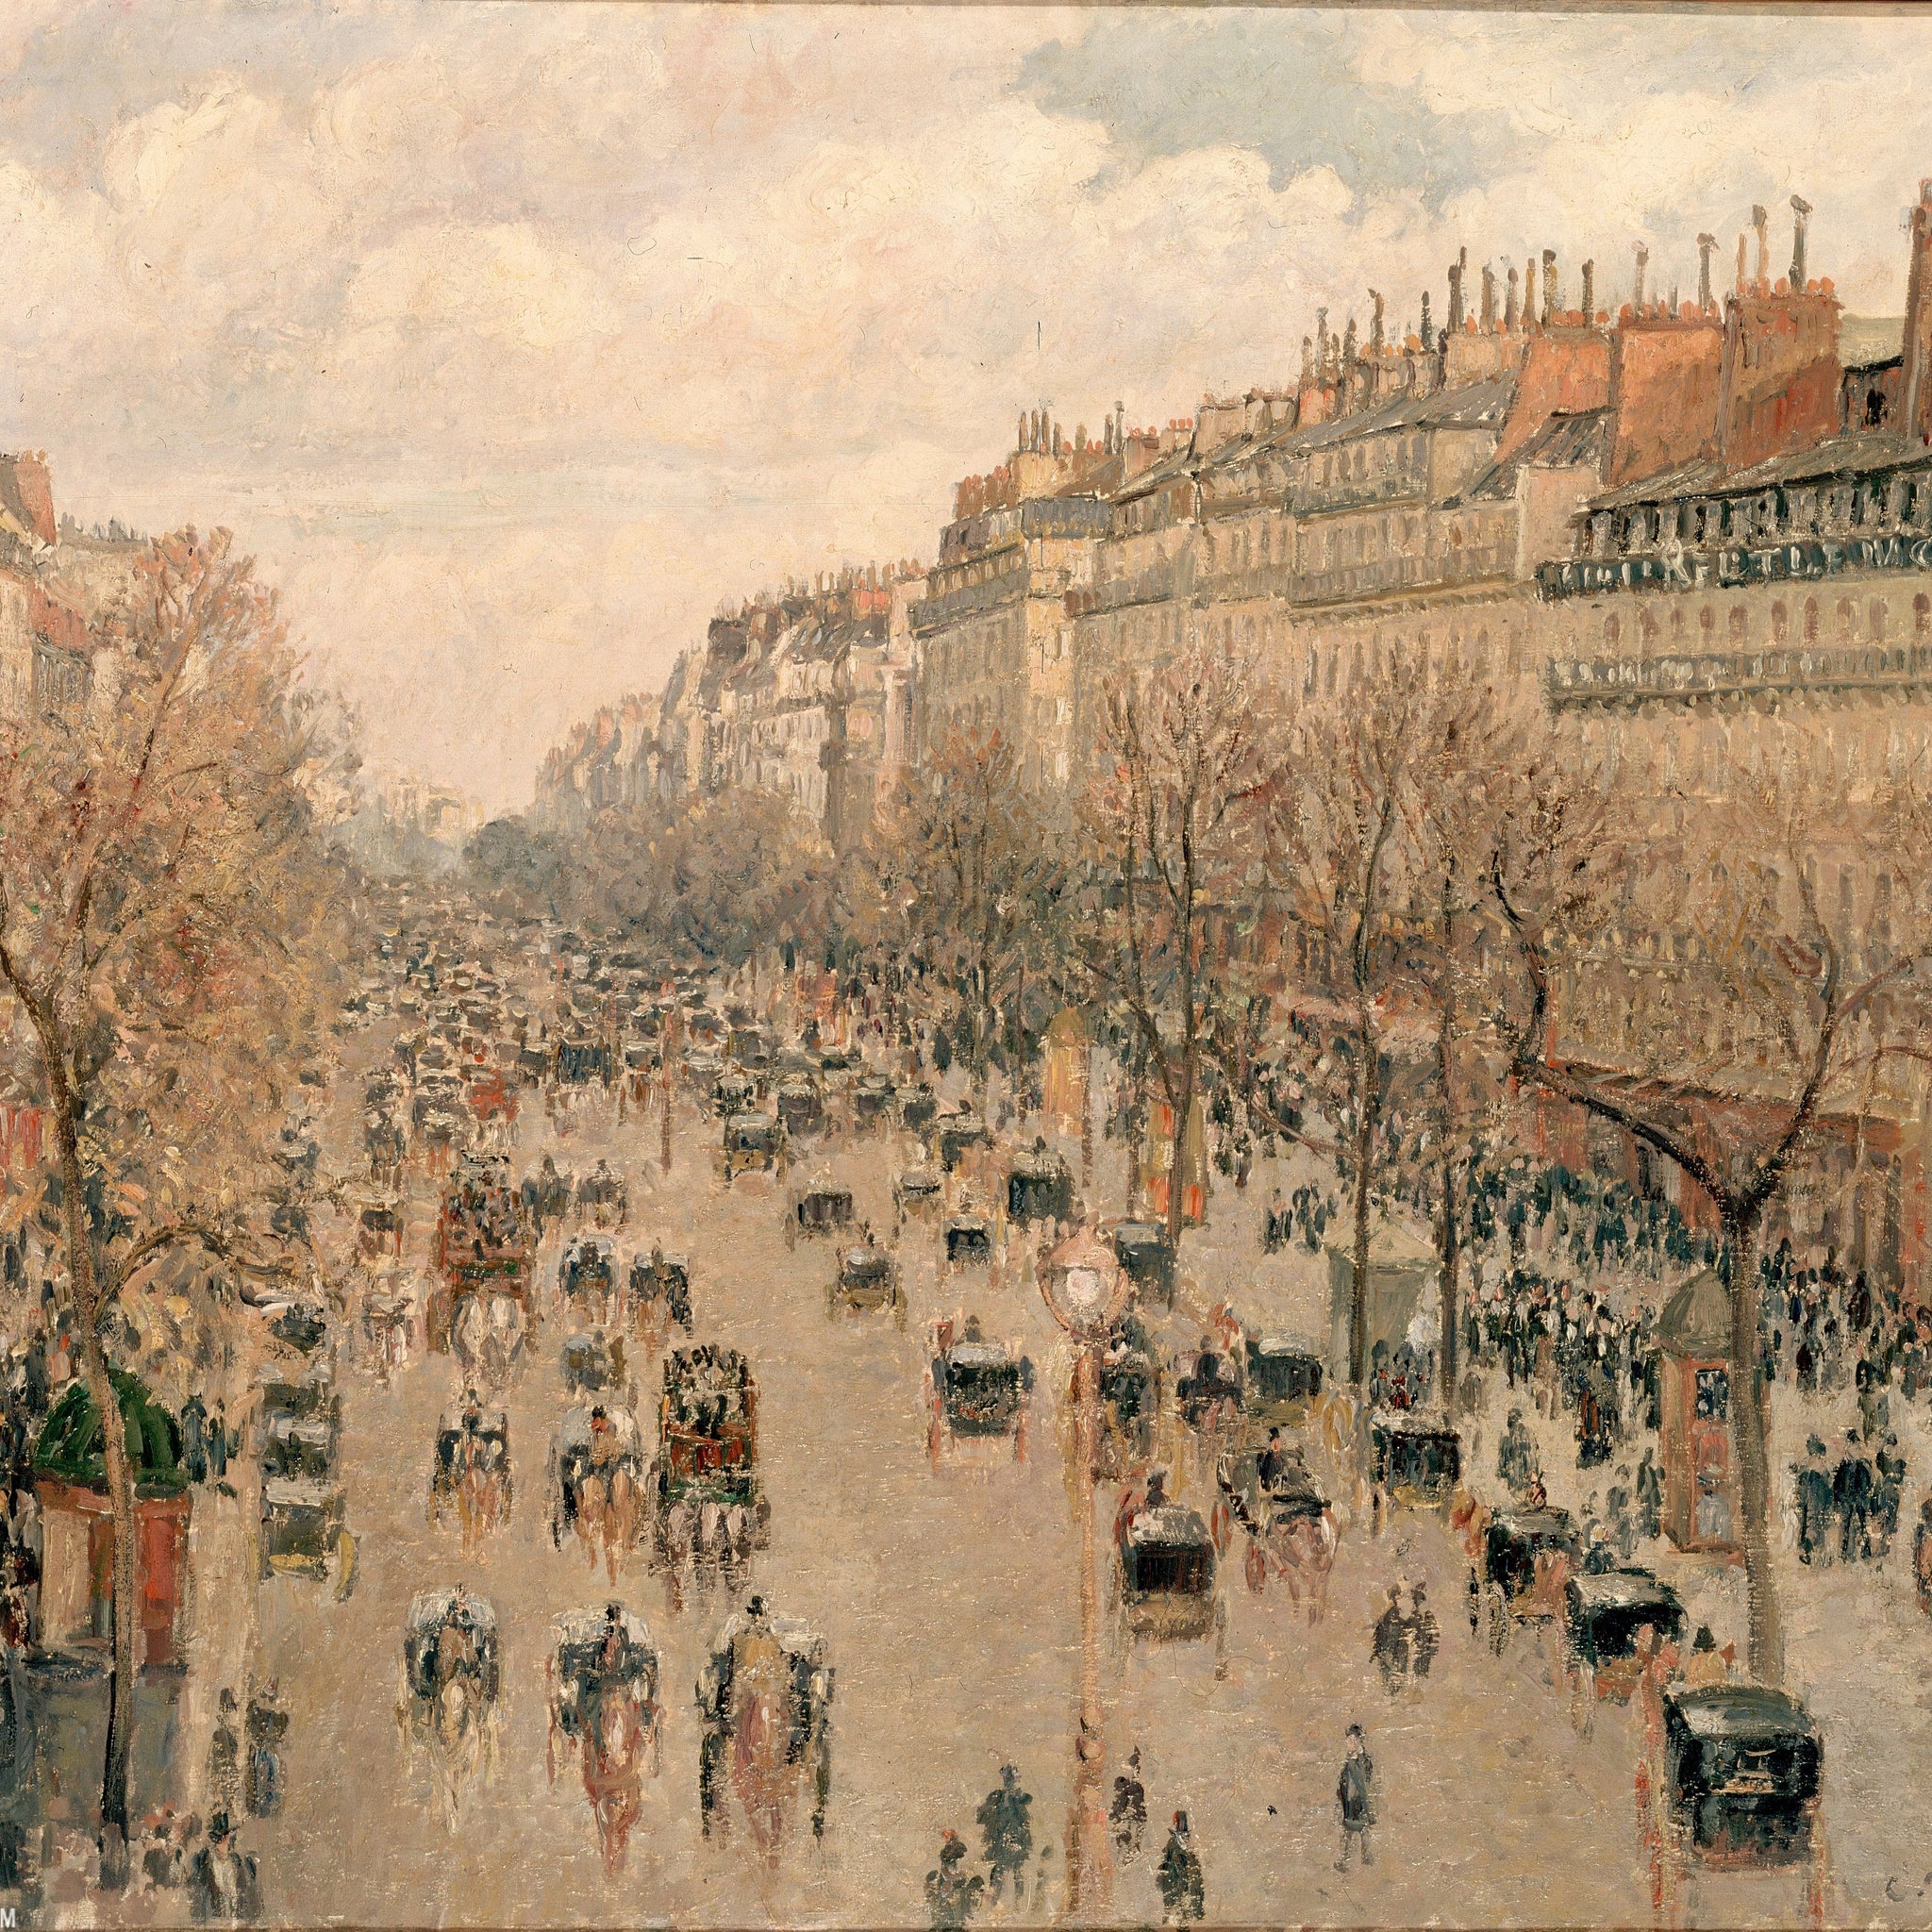 Boulevard Montmartre, soleil après-midi - Camille Pissarro